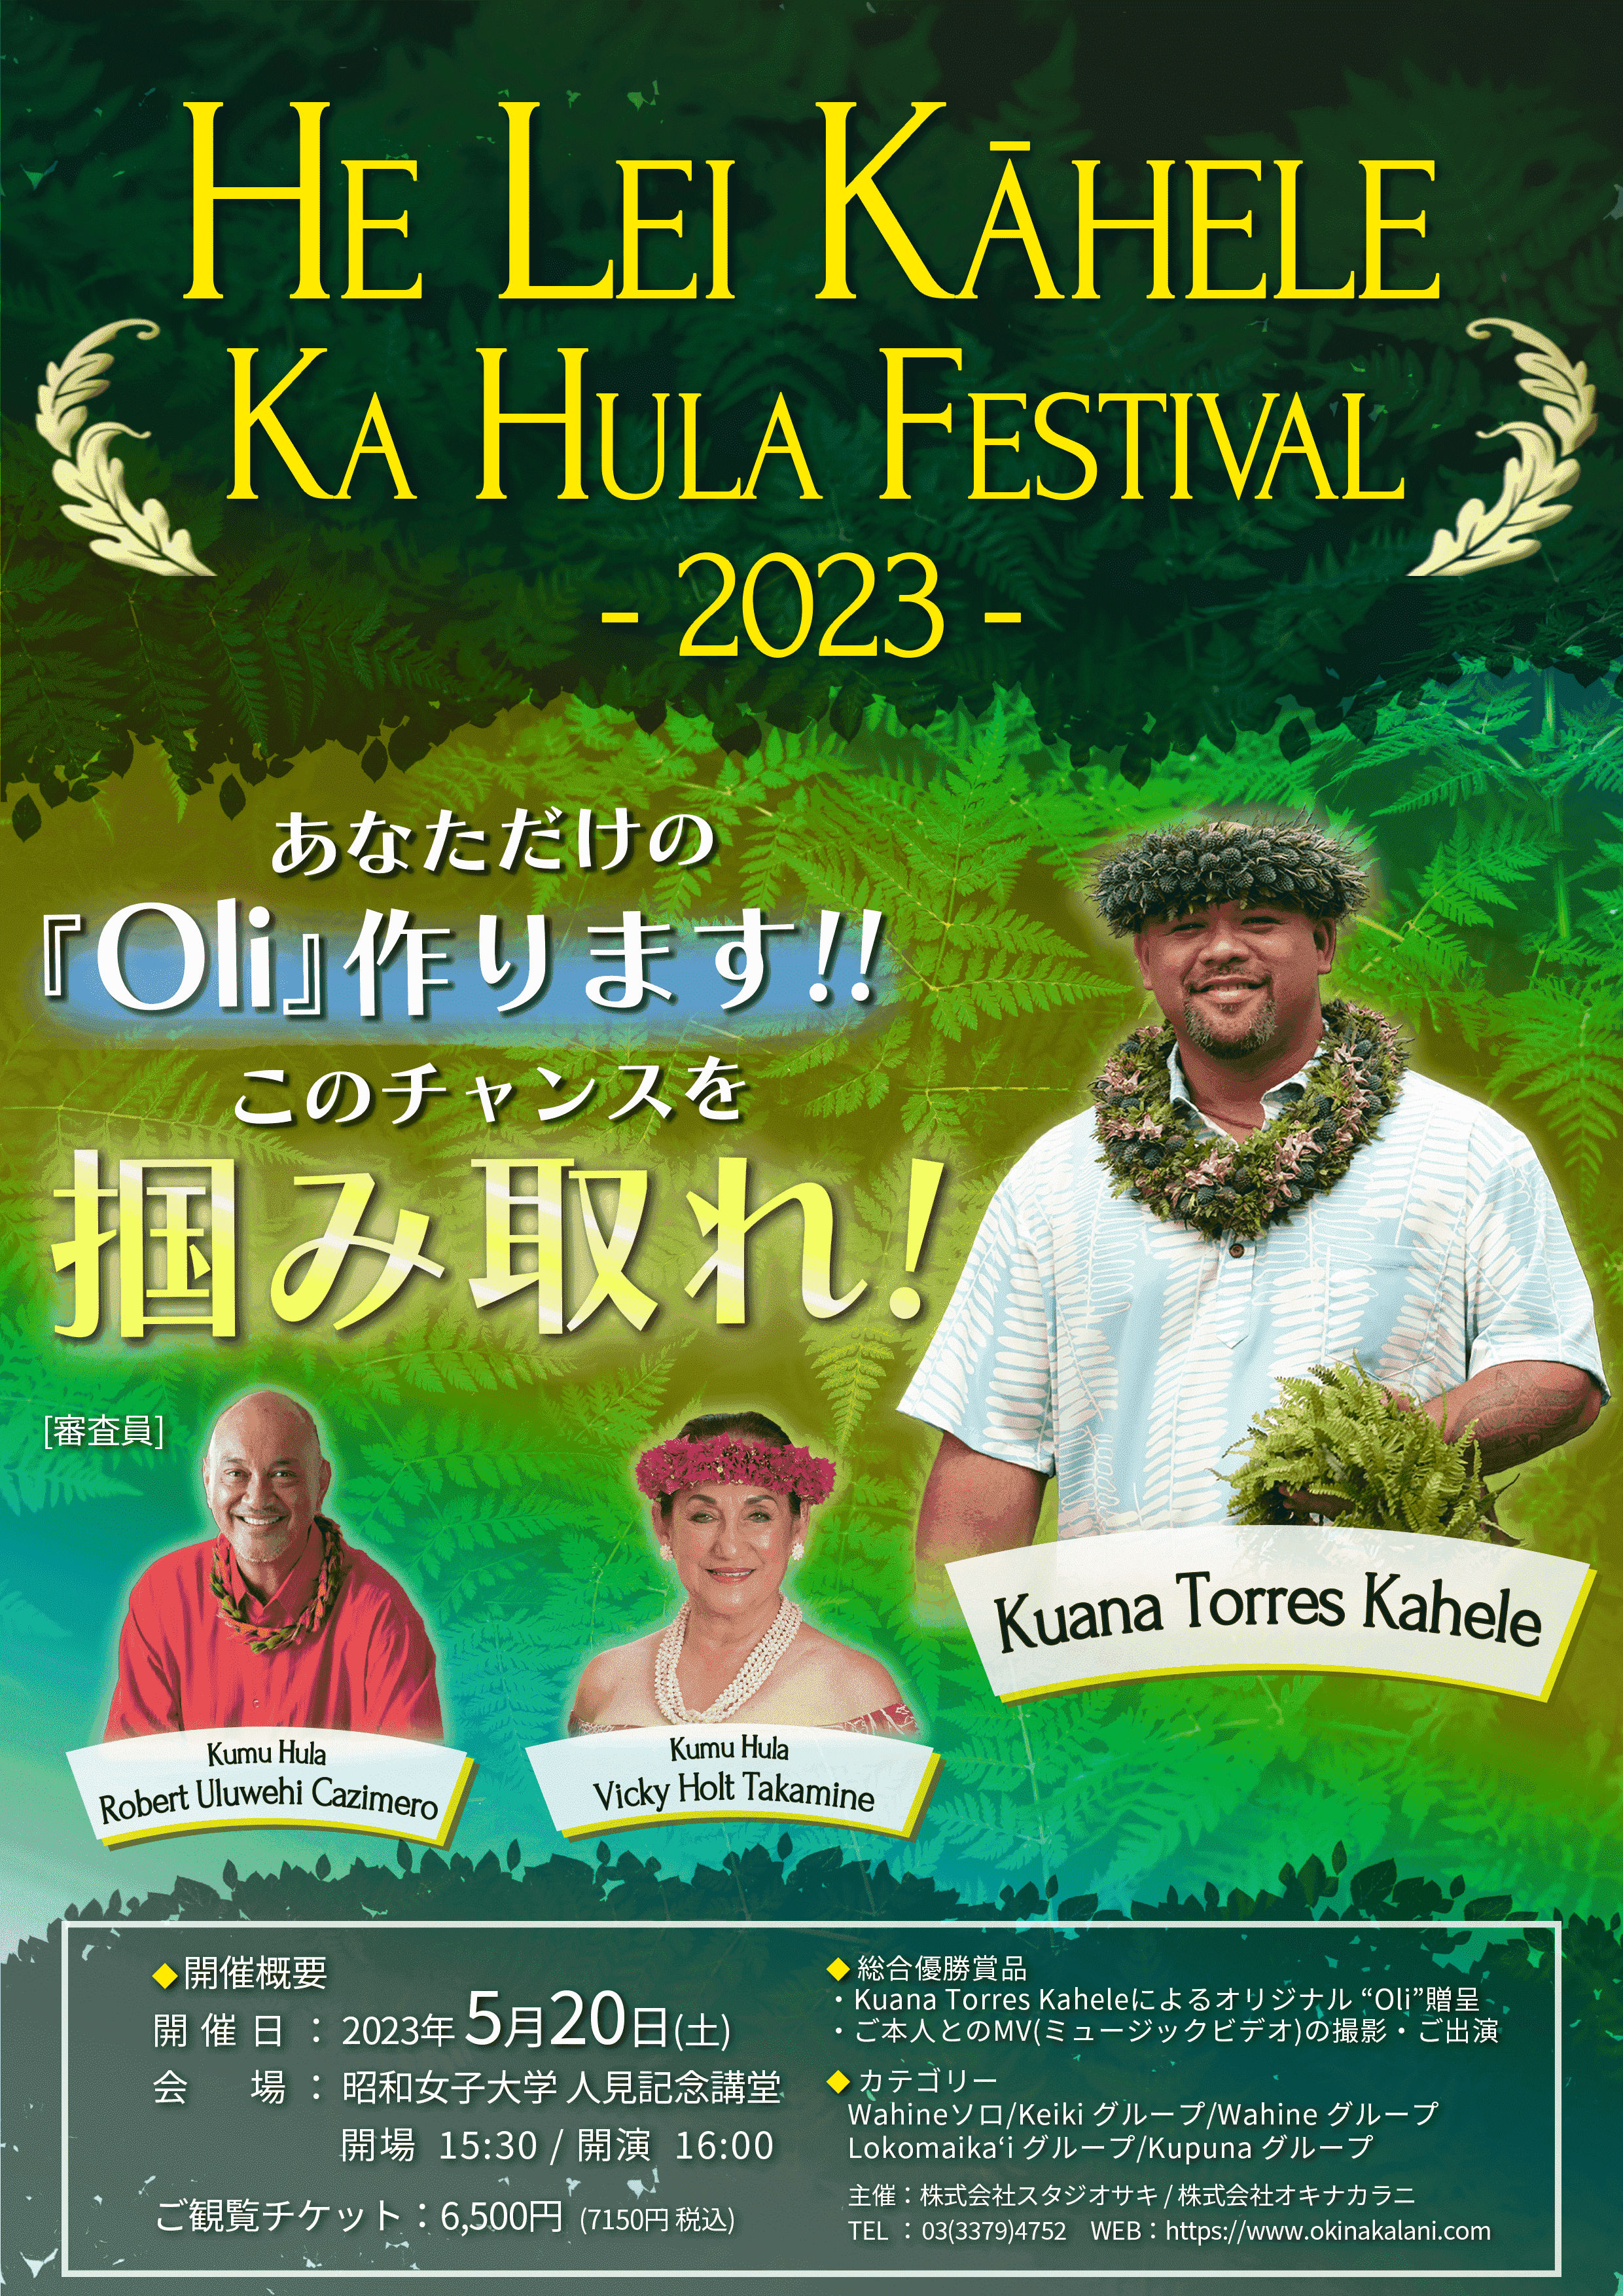 He Lei Kāhele ka Hula Festival 2023